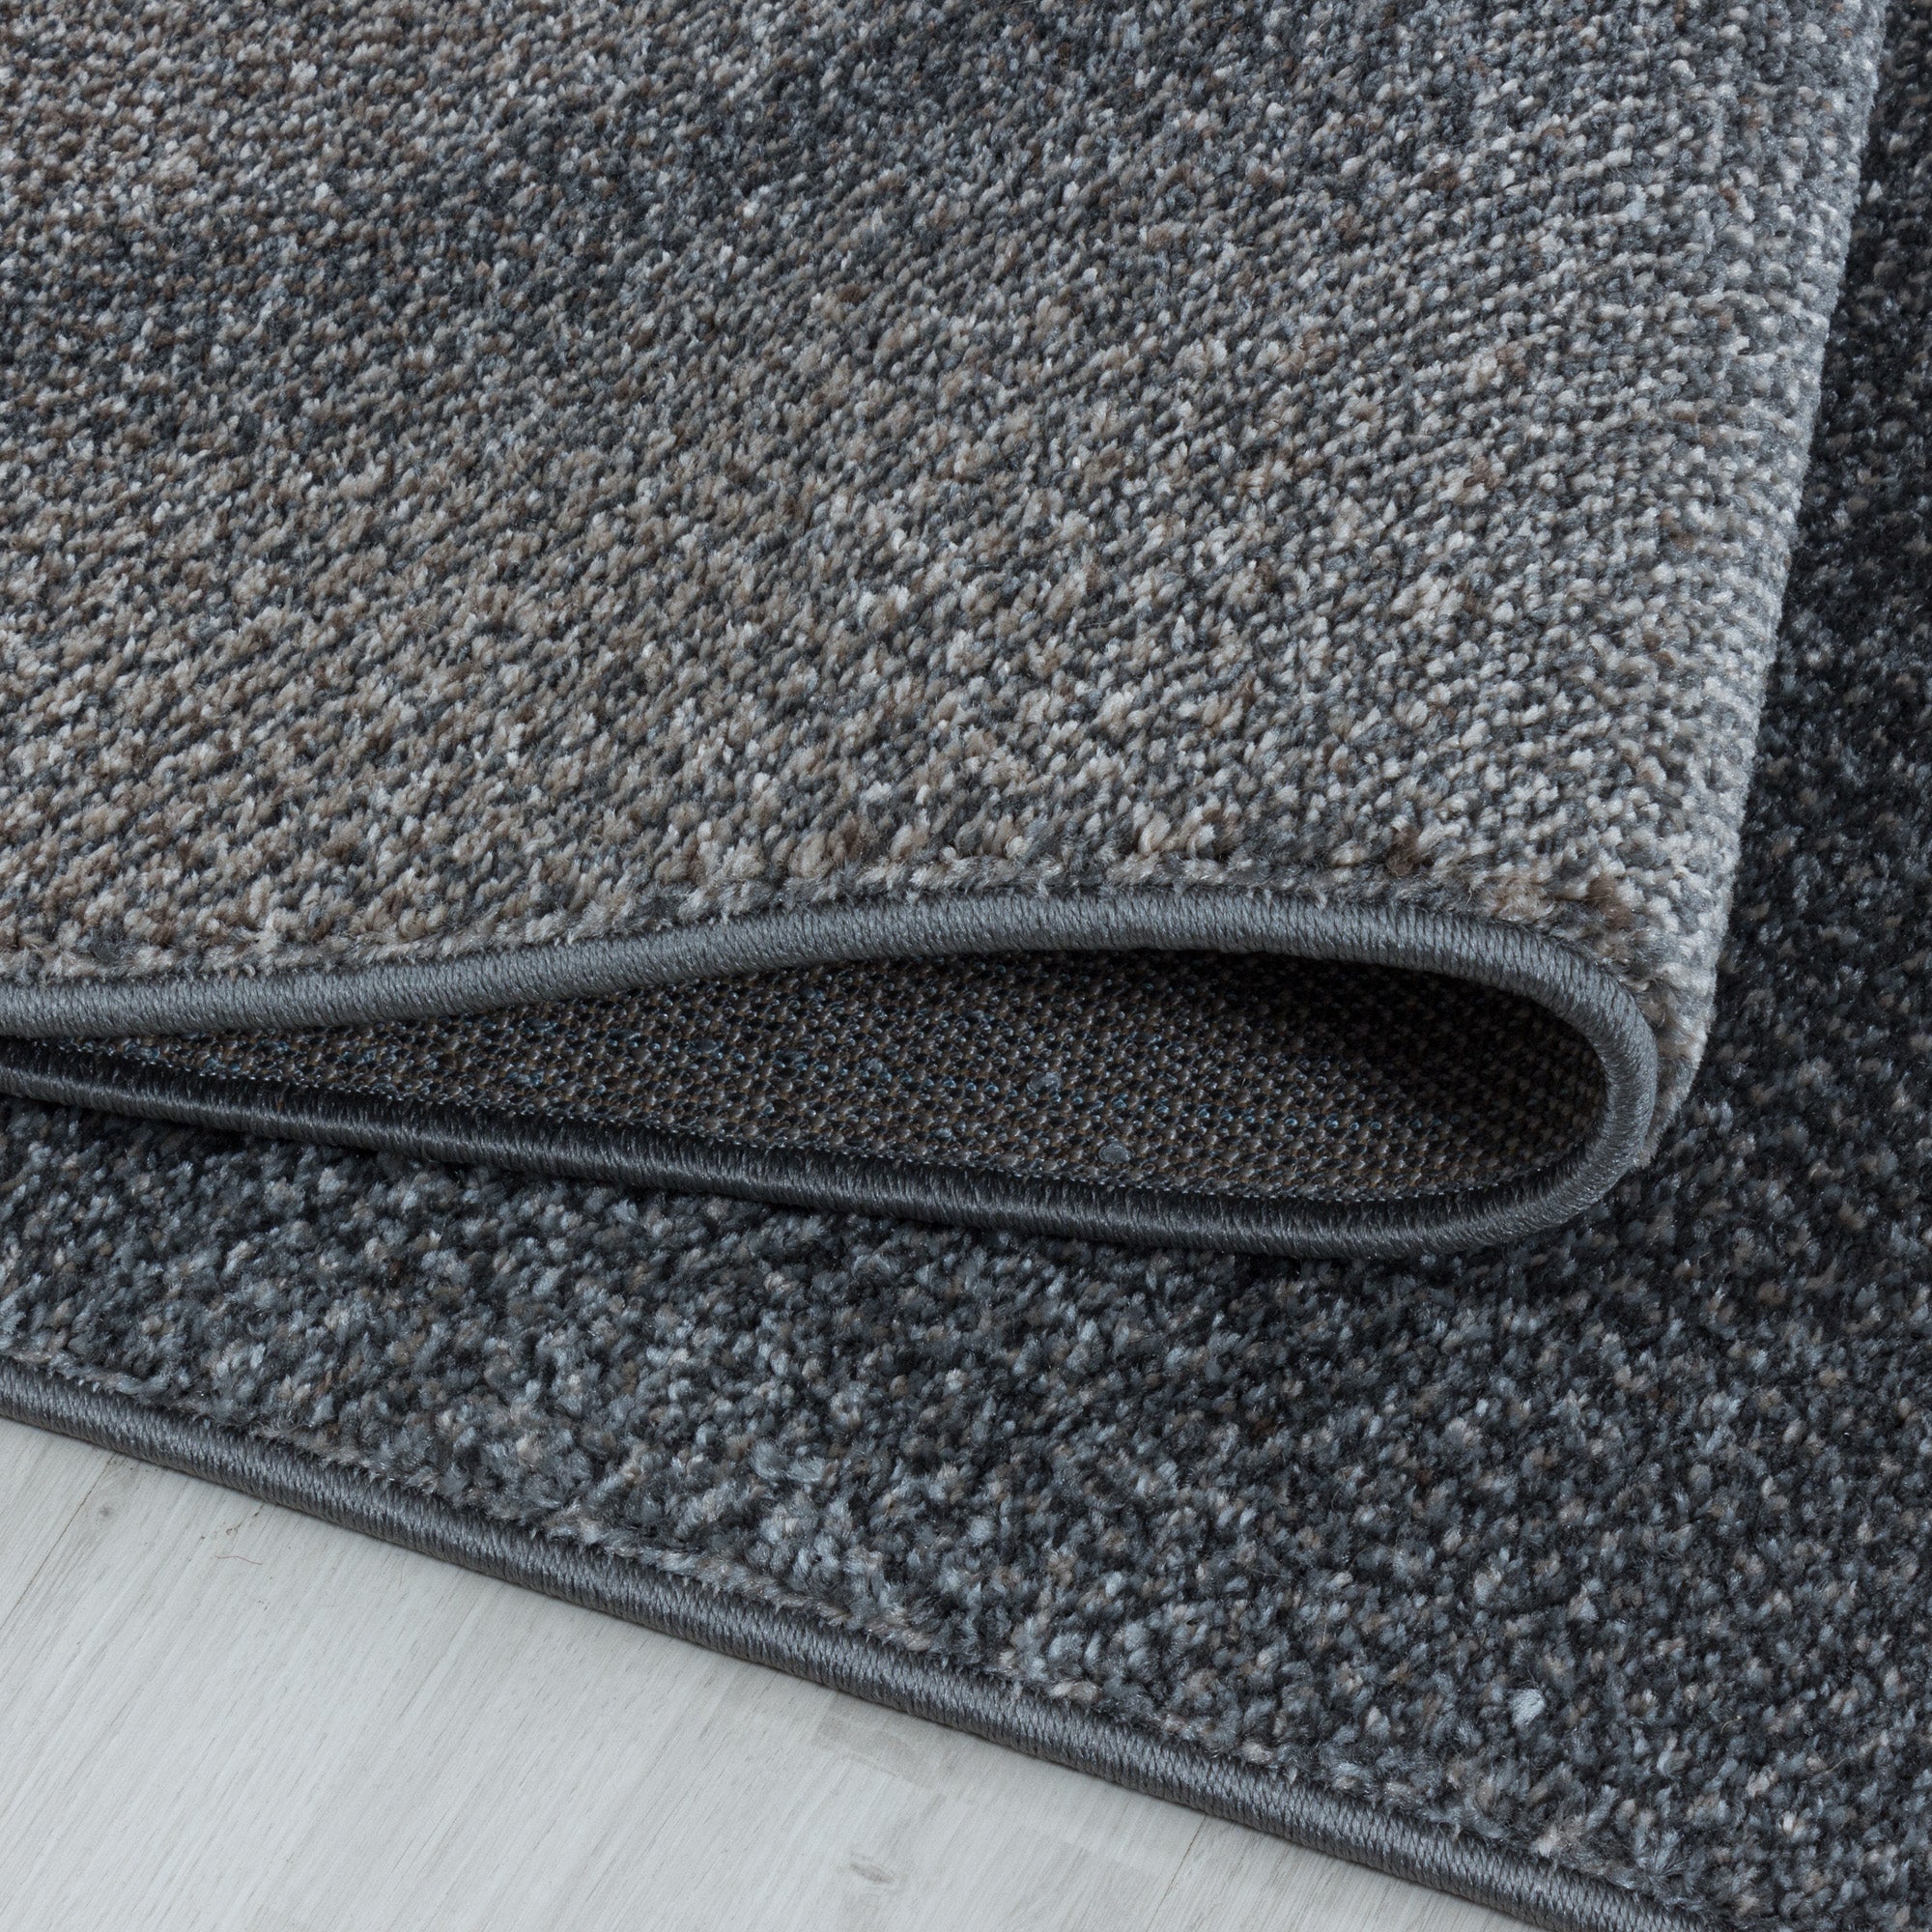 Kurzflor Design Teppich Wohnzimmerteppich Plastische Schatten Muster Braun